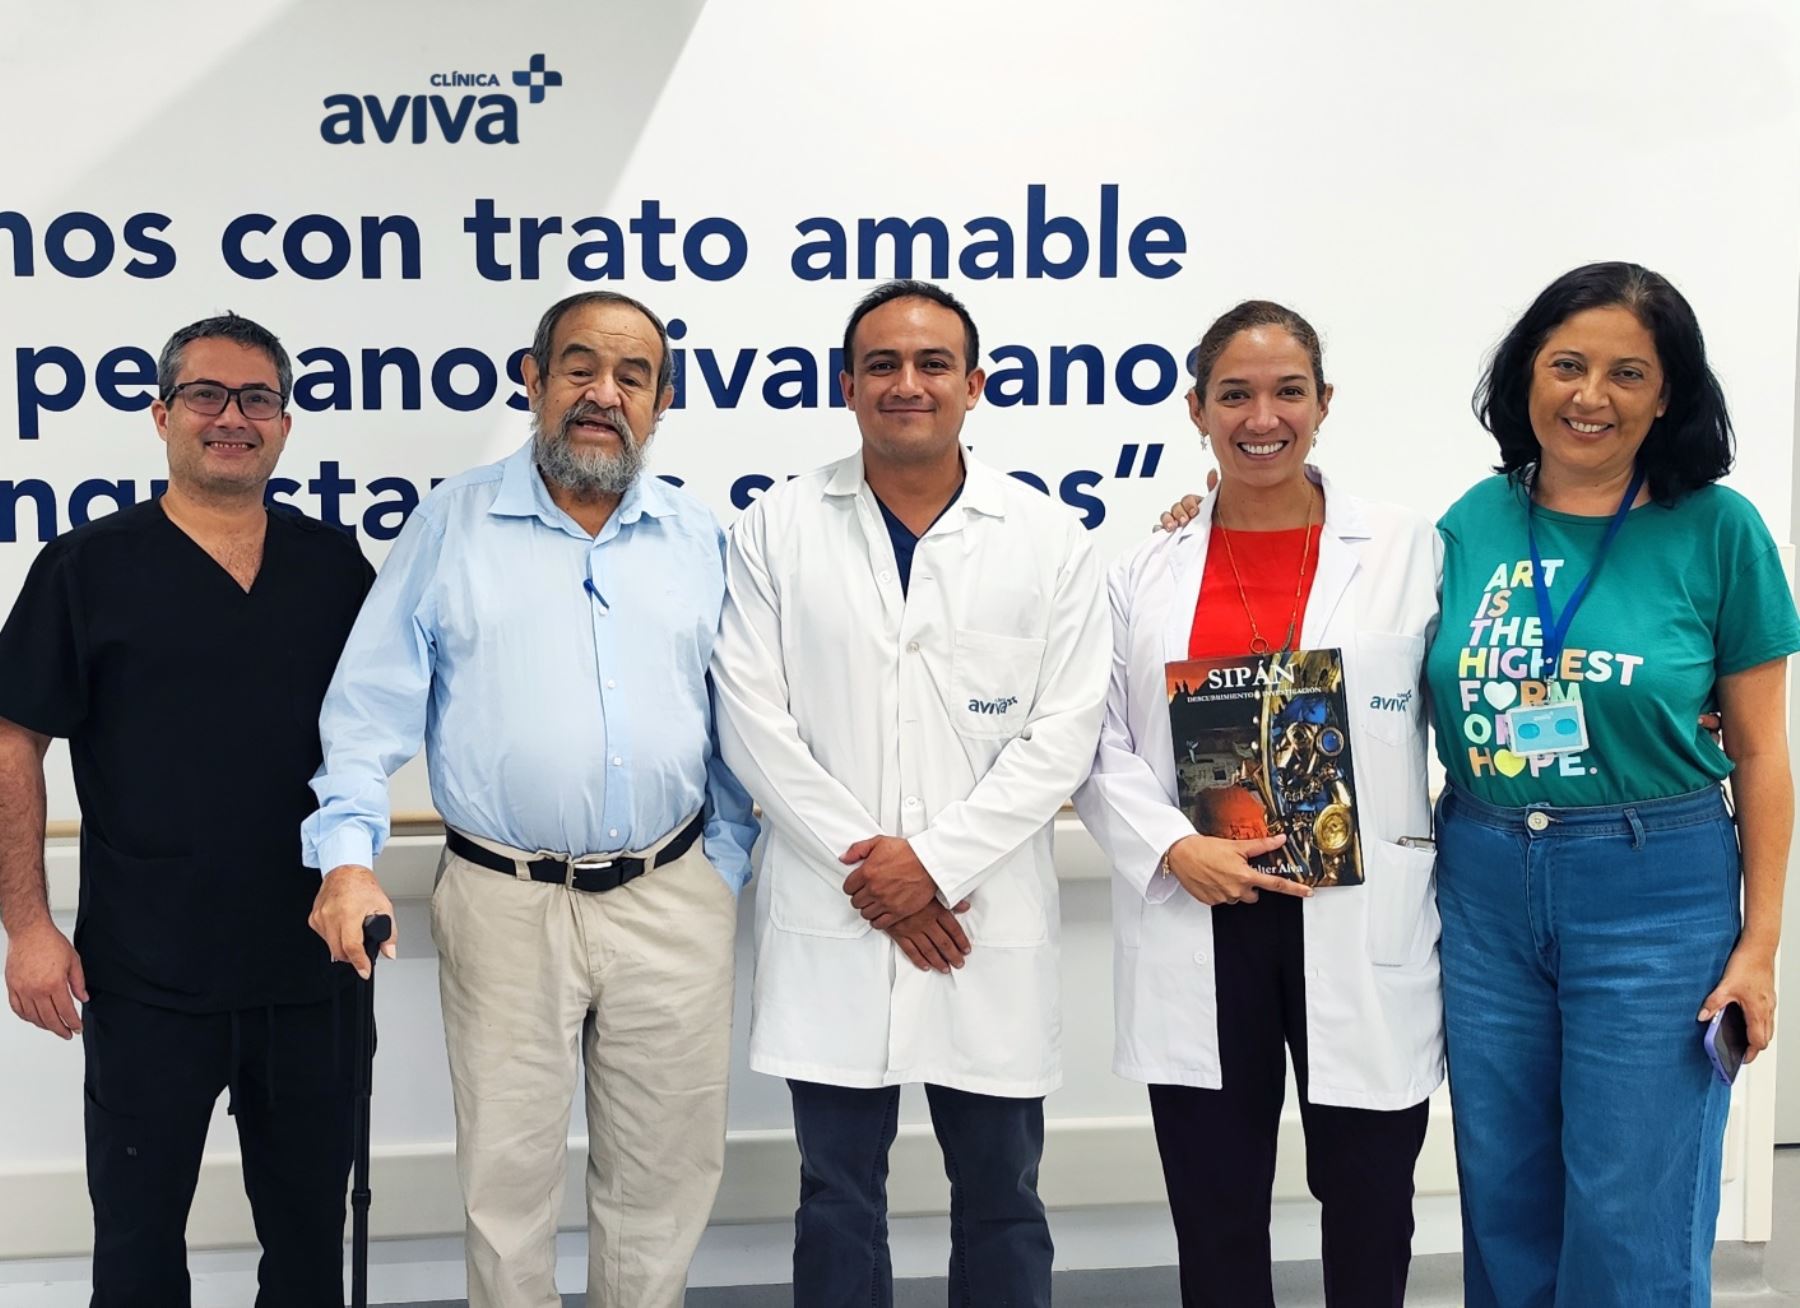 El arqueólogo Walter Alva recuperó su salud, gracias a la atención que le brindaron los médicos de una clínica en Lima.